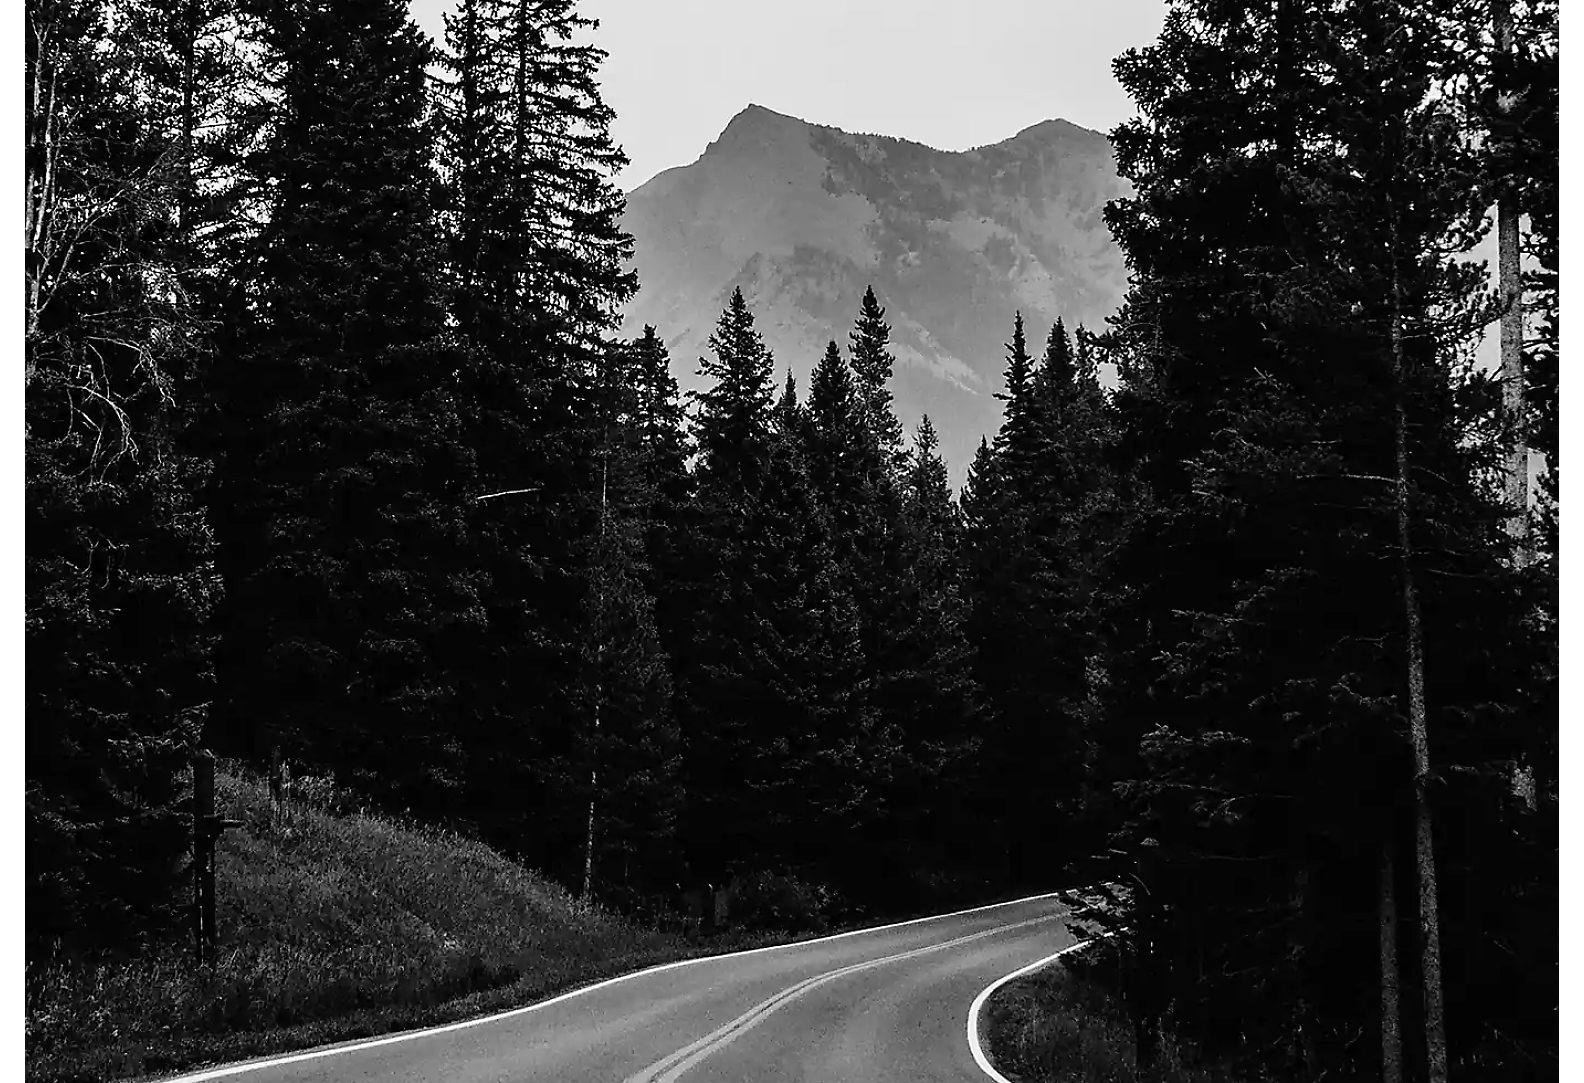 Czarno-białe zdjęcie drogi w lesie. W tle szczyt górski.